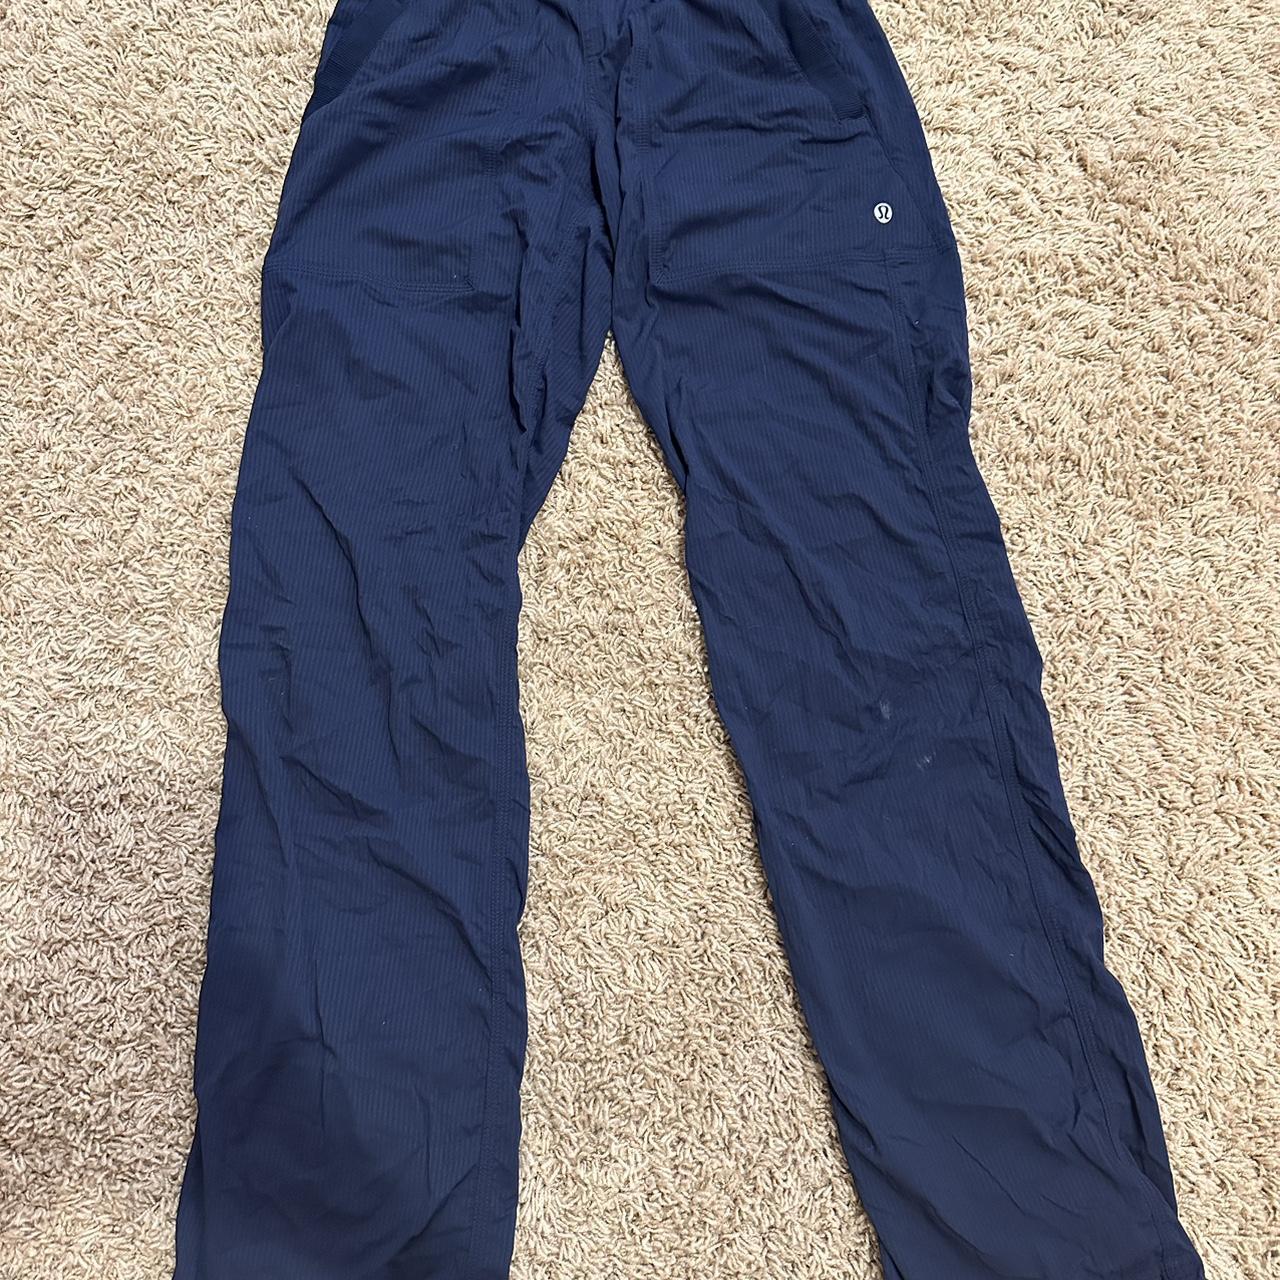 navy blue lululemon dance pants. i've had these for - Depop